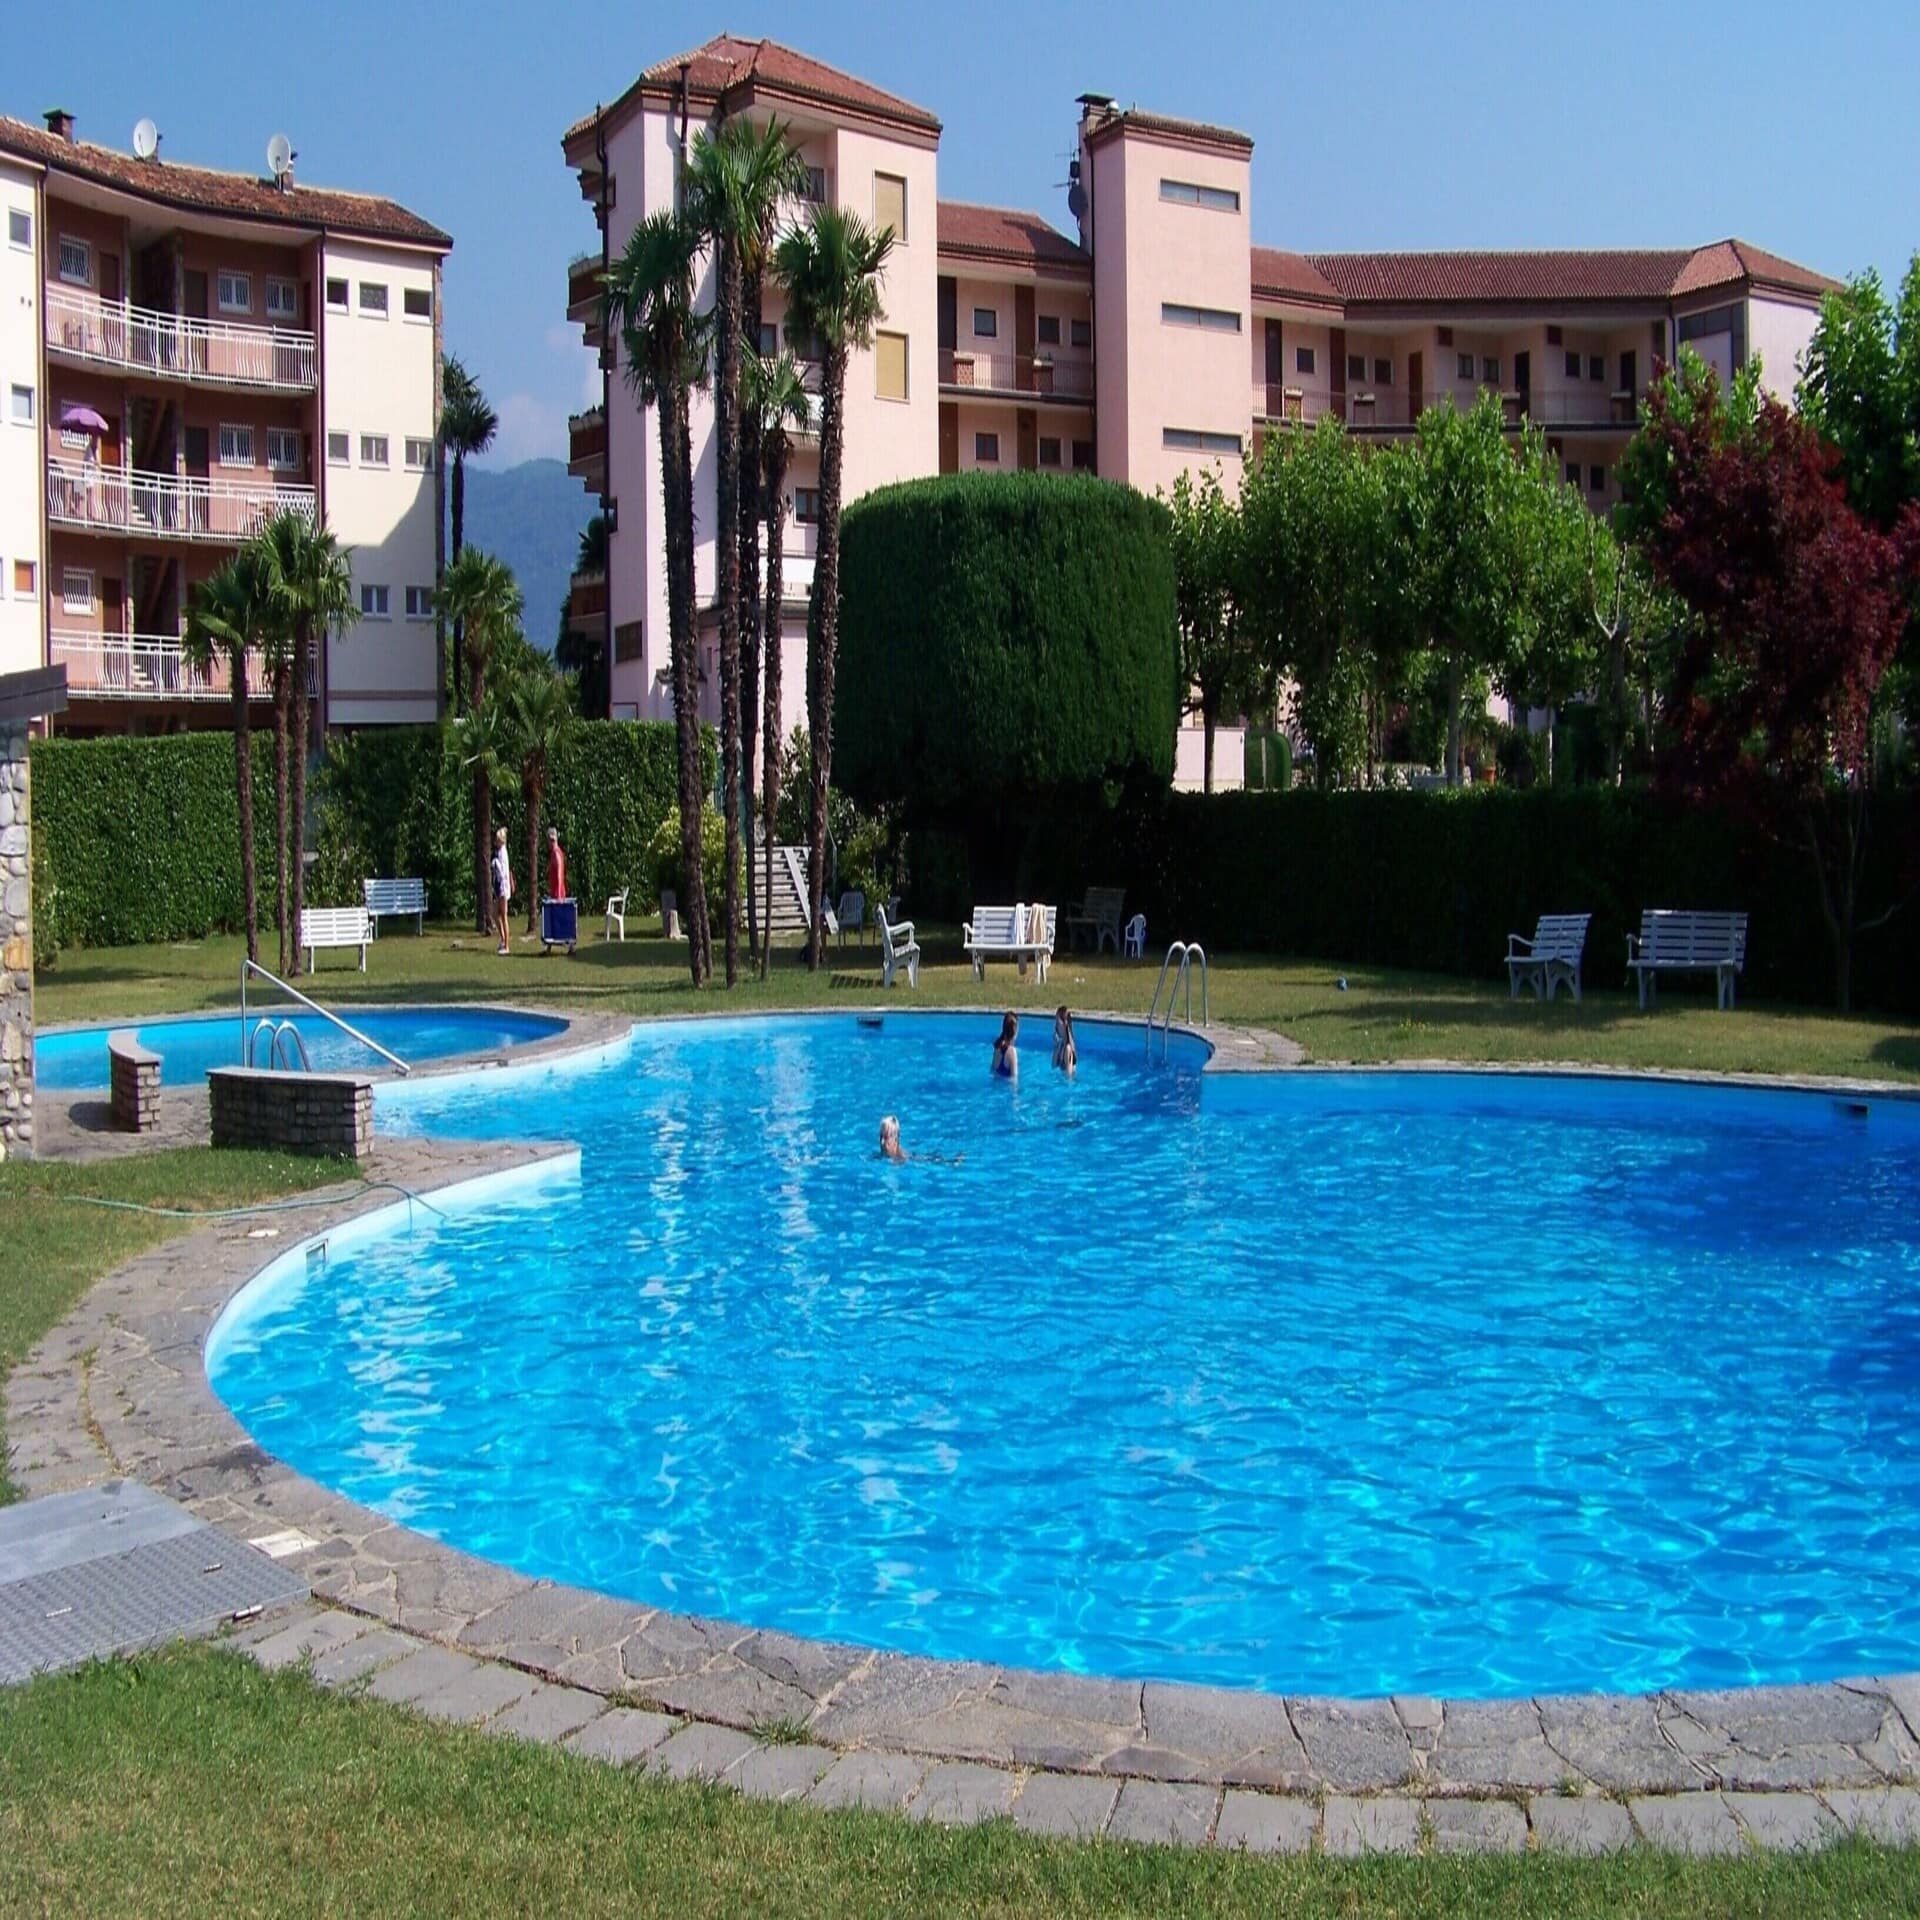 Personen schwimmen in einem Pool im Garten einer Apartmentanlage. 